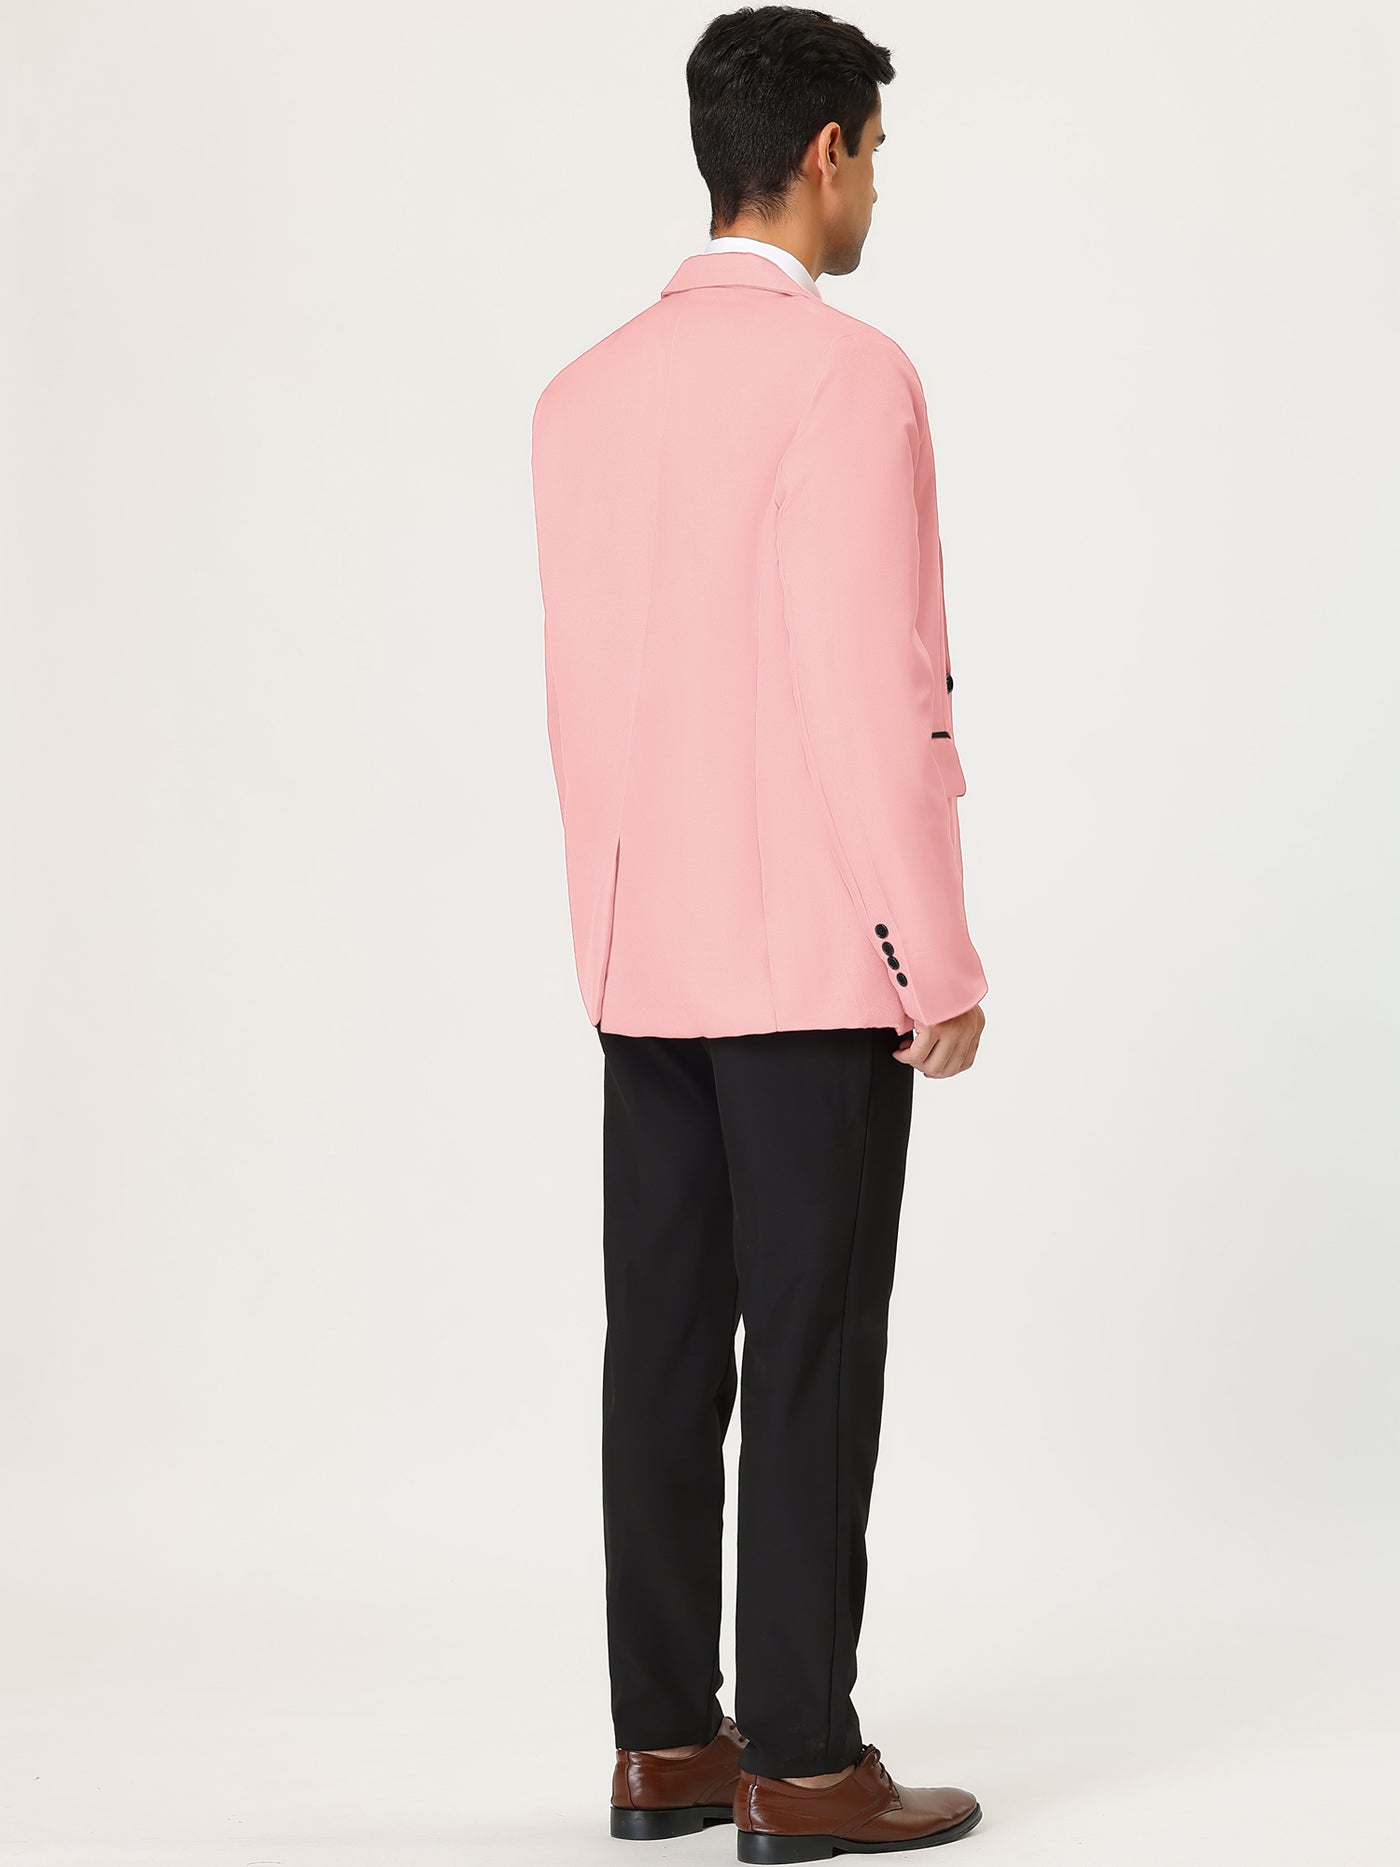 Bublédon Men's Business Blazer Slim Fit One Button Suit Jacket Sports Coat